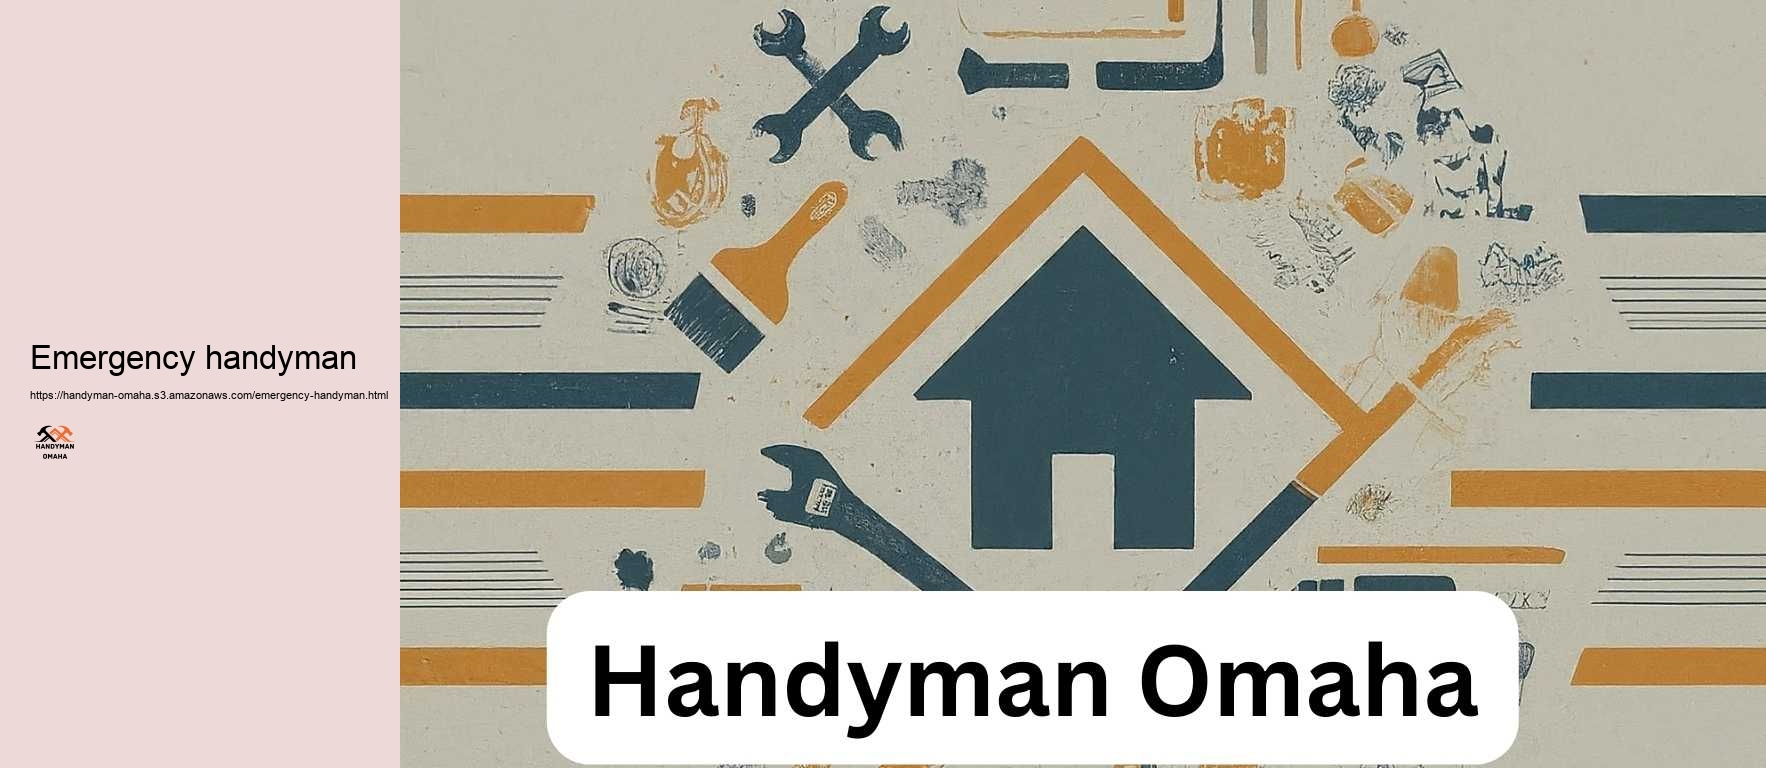 Emergency handyman